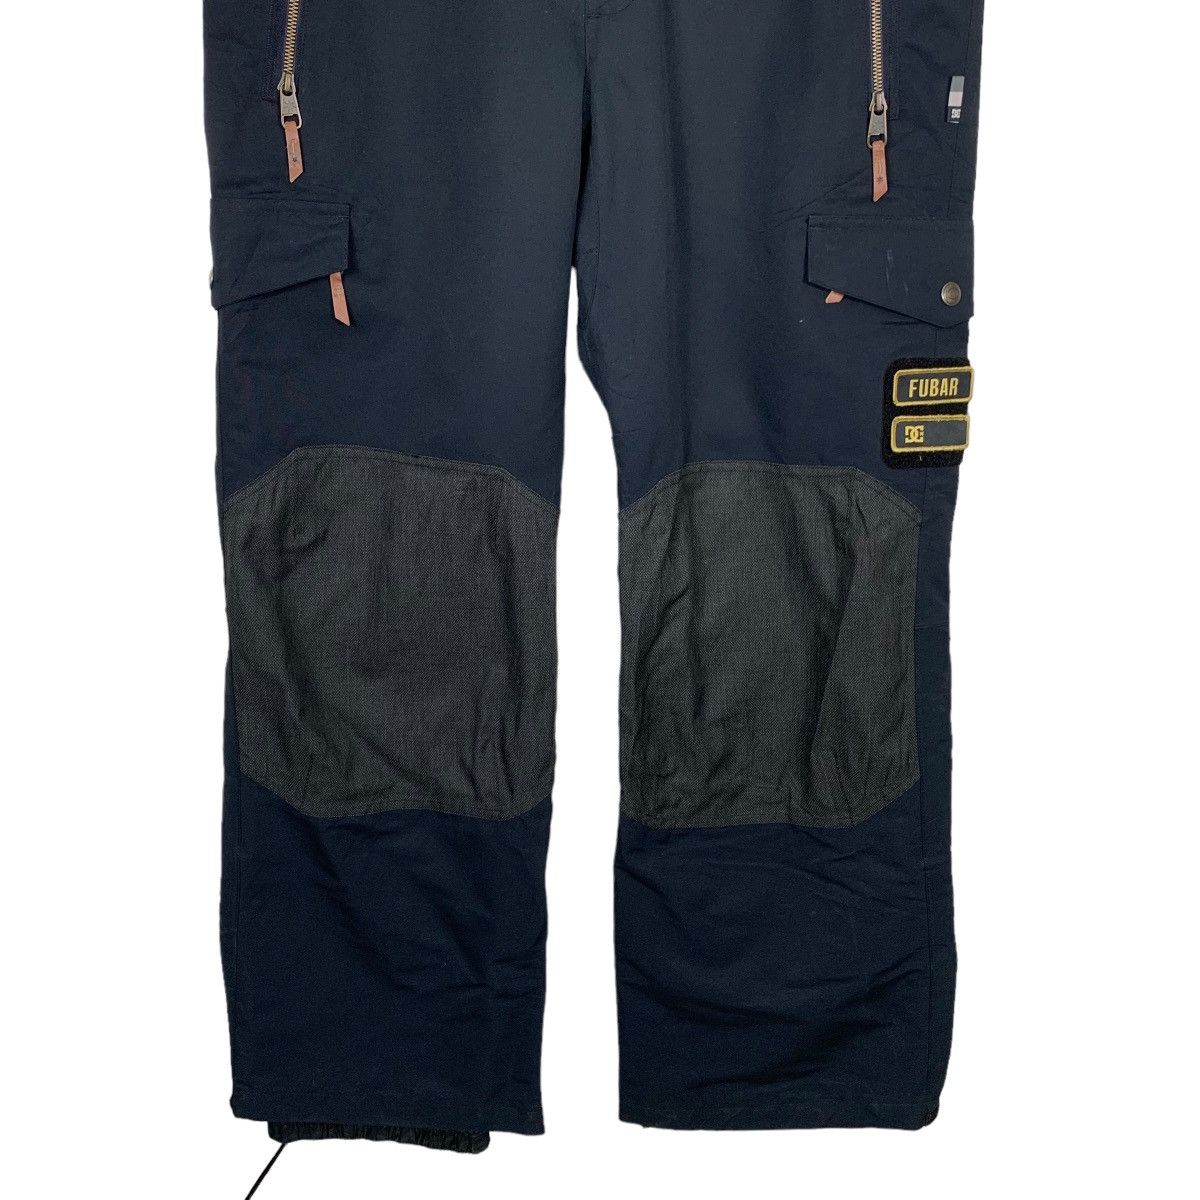 Dc - D.C. SHOE Waterproof Ski Wear Overalls #0055-C4 - 5